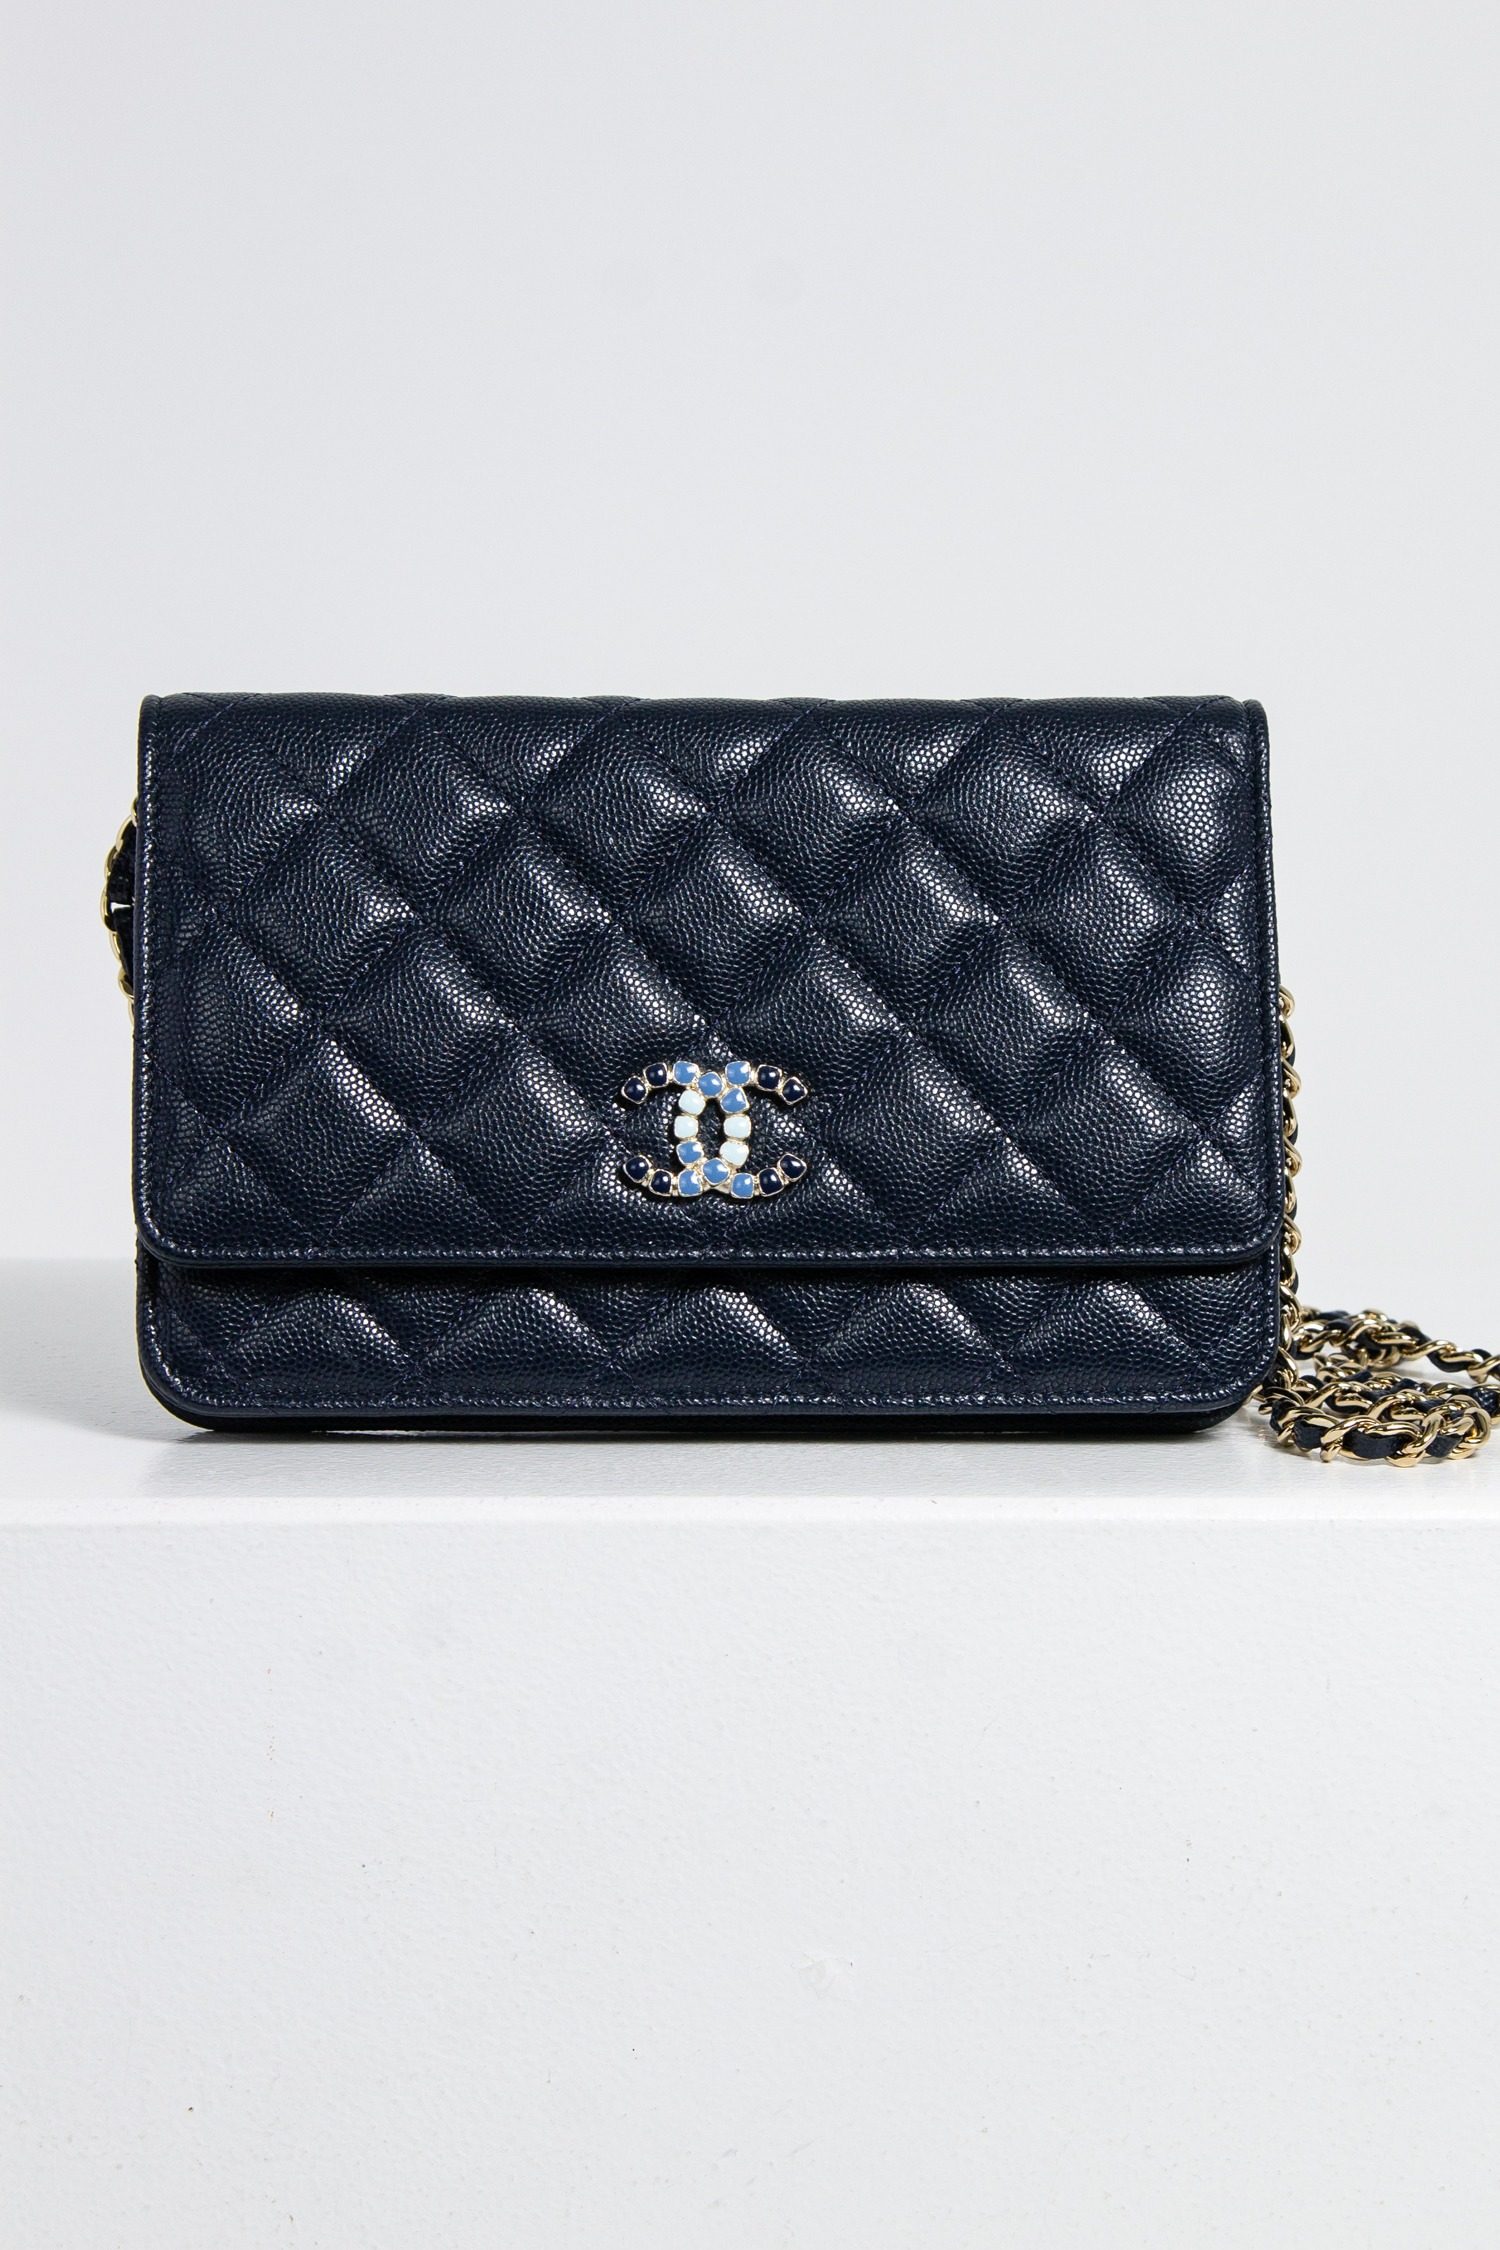 Chanel Pochette mit Kette in dunkelblau mit emailliertem Logo